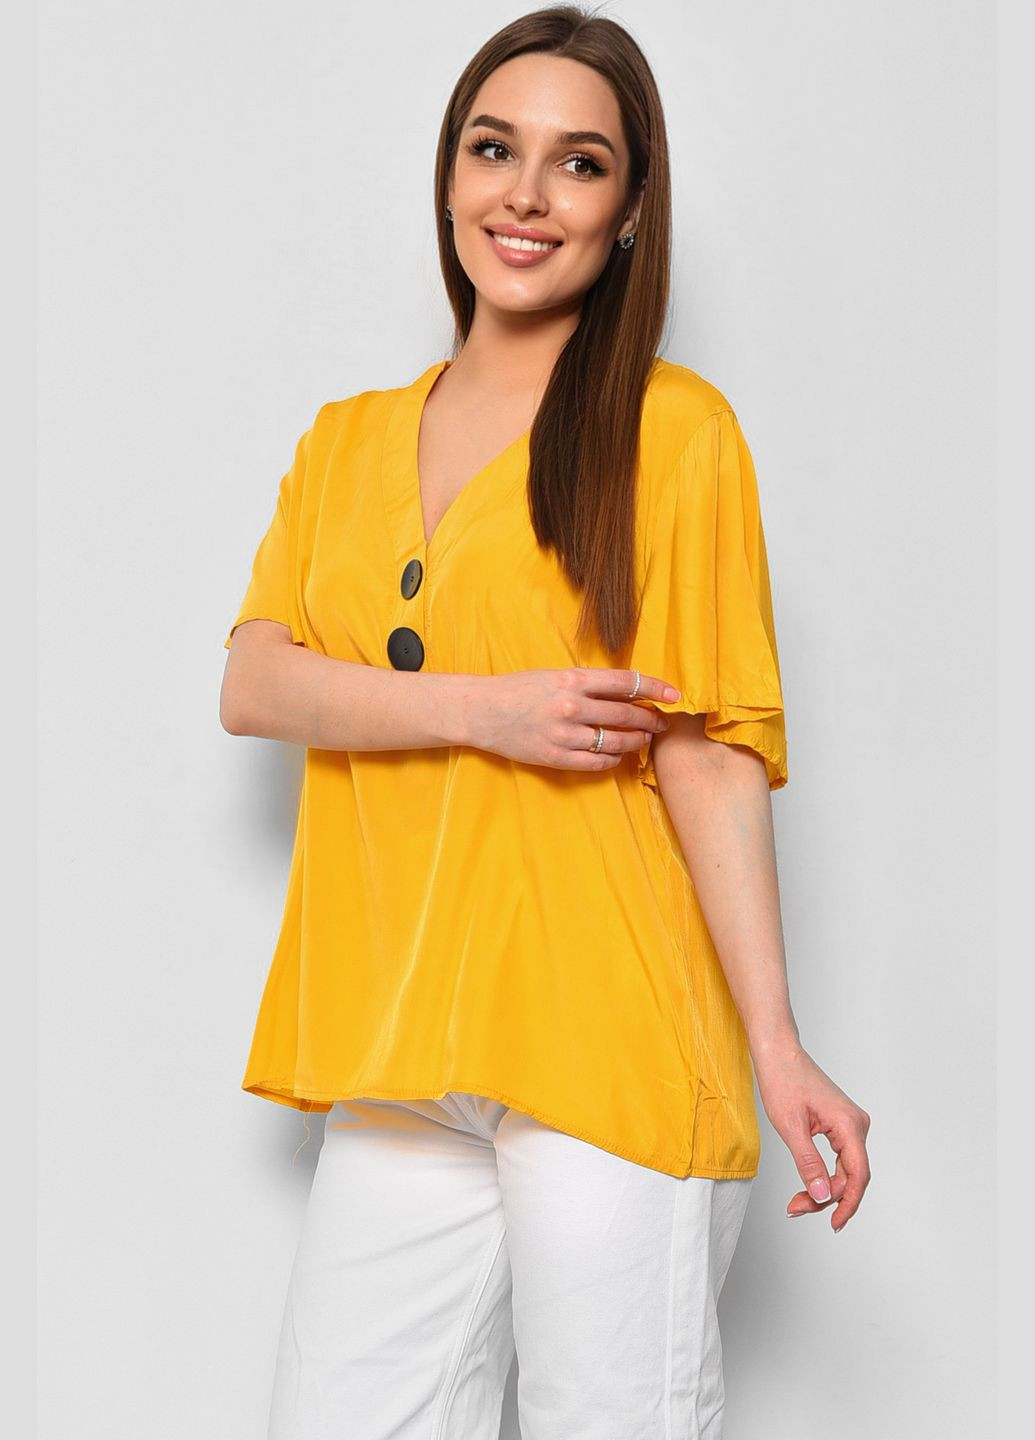 Горчичная демисезонная блуза женская с коротким рукавом горчичного цвета с баской Let's Shop